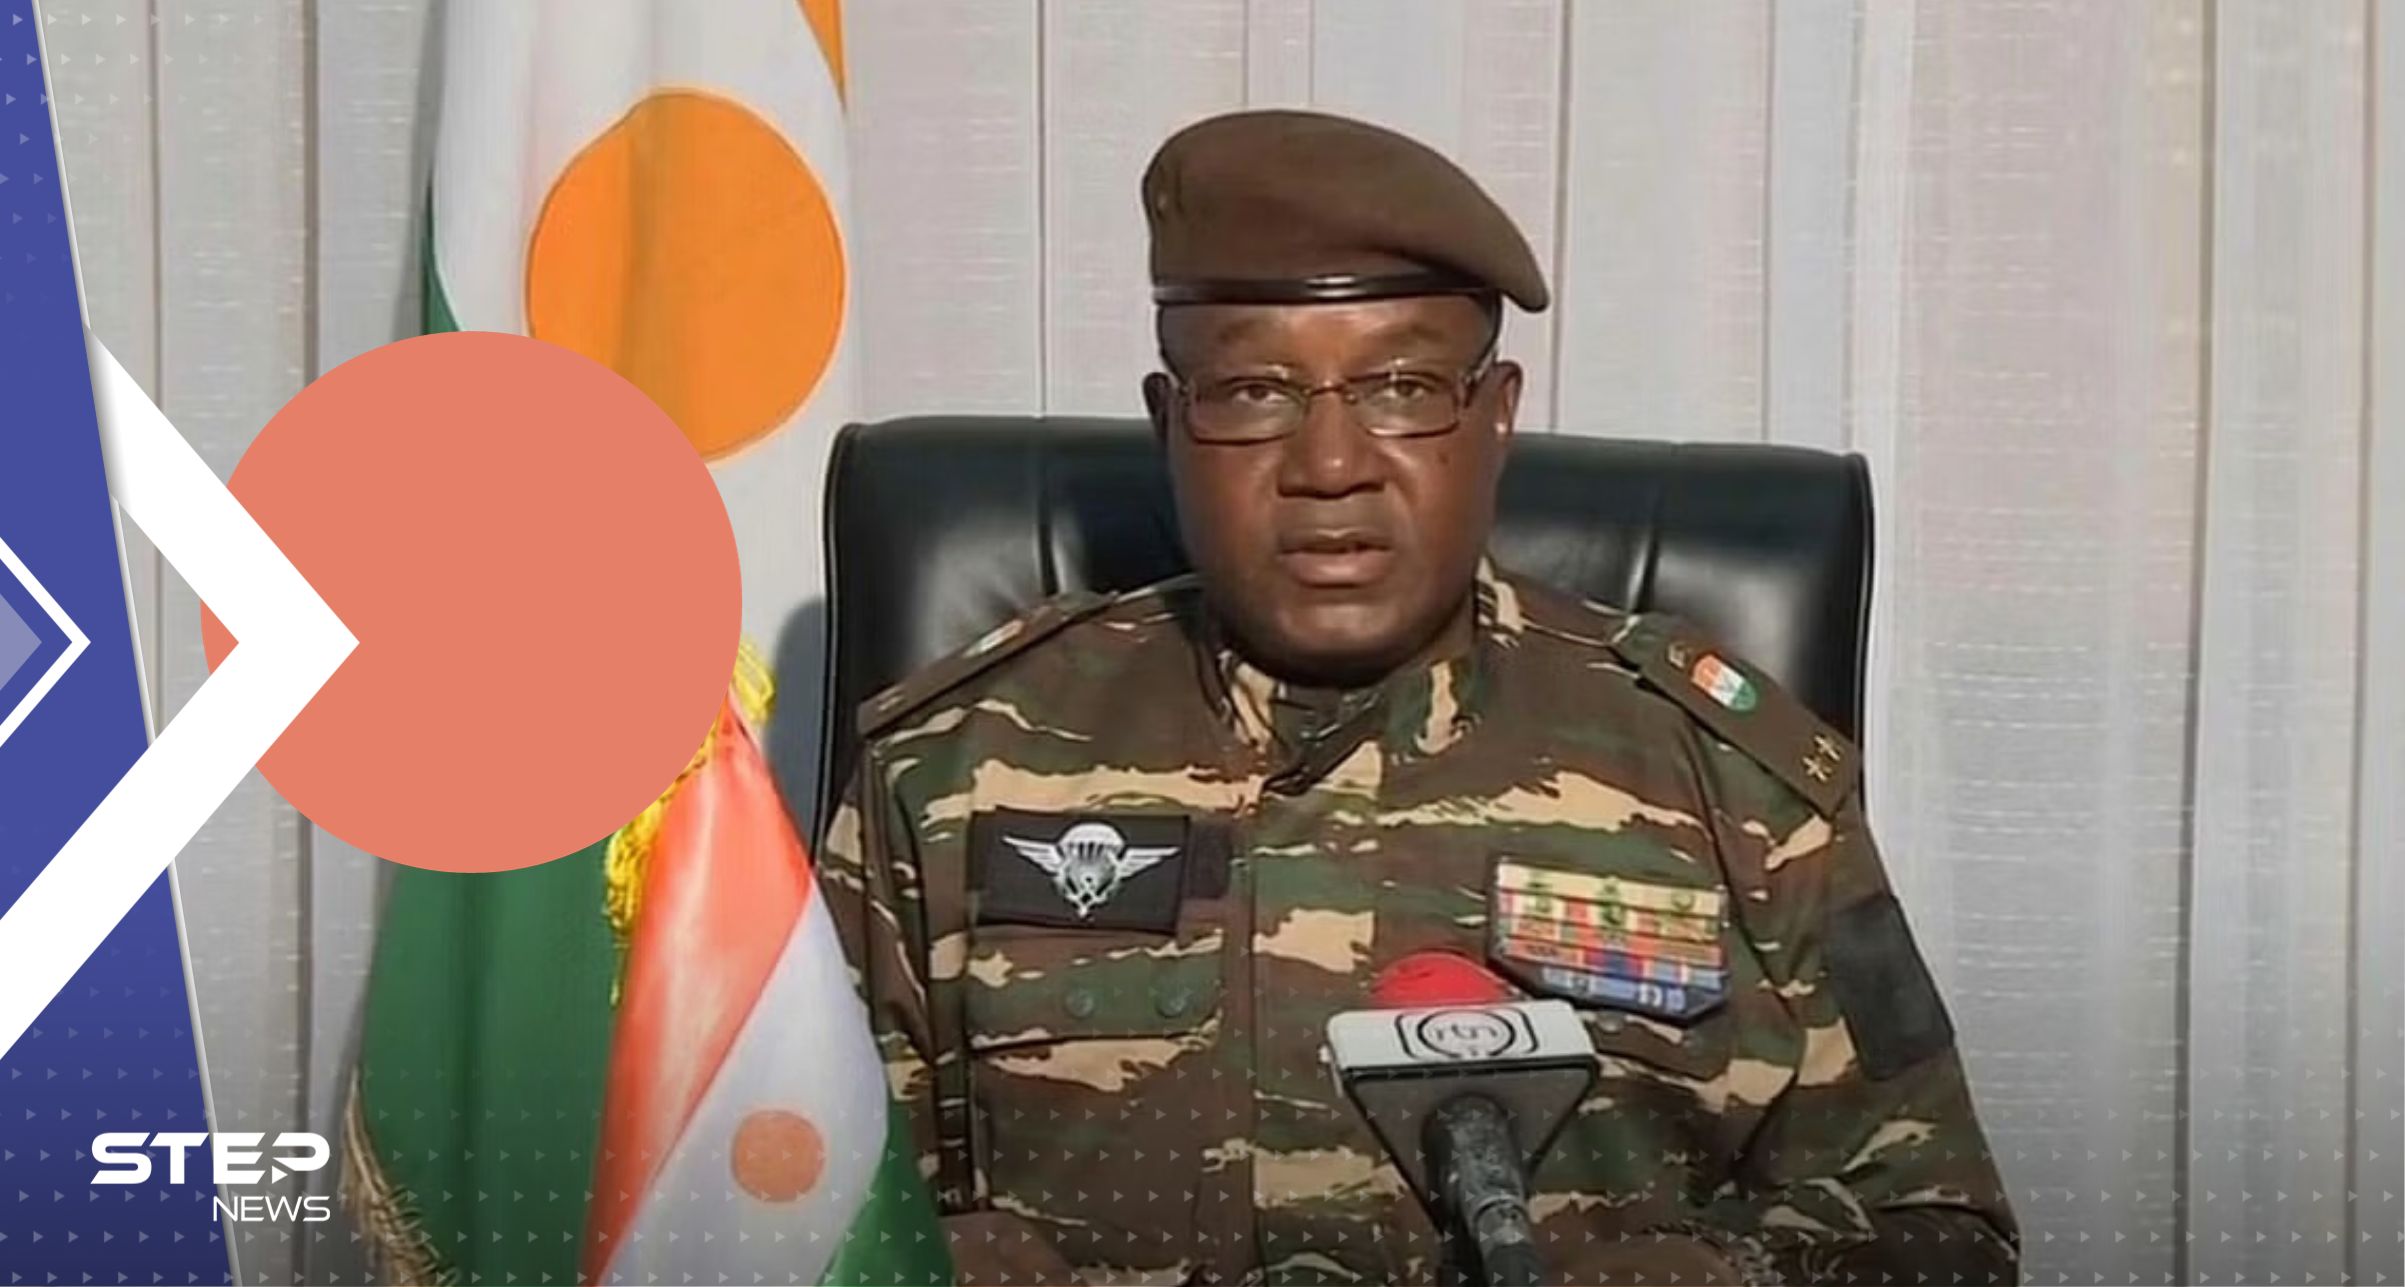 بعد مغادرة الجيش الفرنسي.. واشنطن تعتبر رسمياً استحواذ العسكريين على السلطة في النيجر انقلاباً